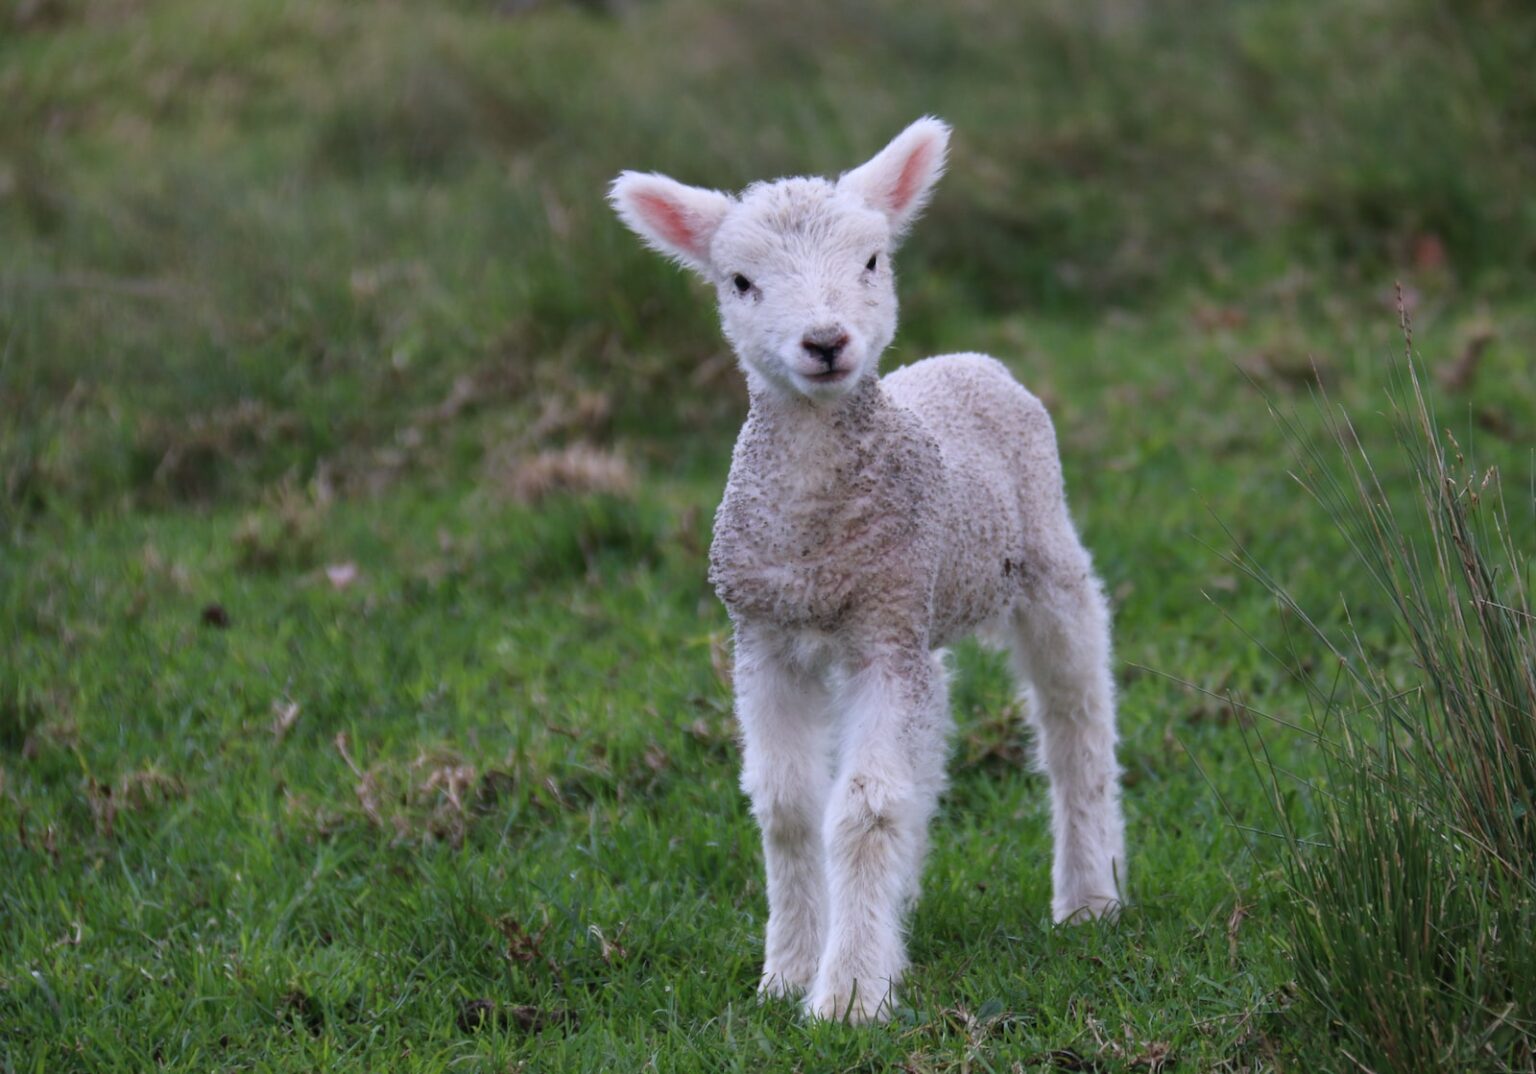 white and gray sheep lamb